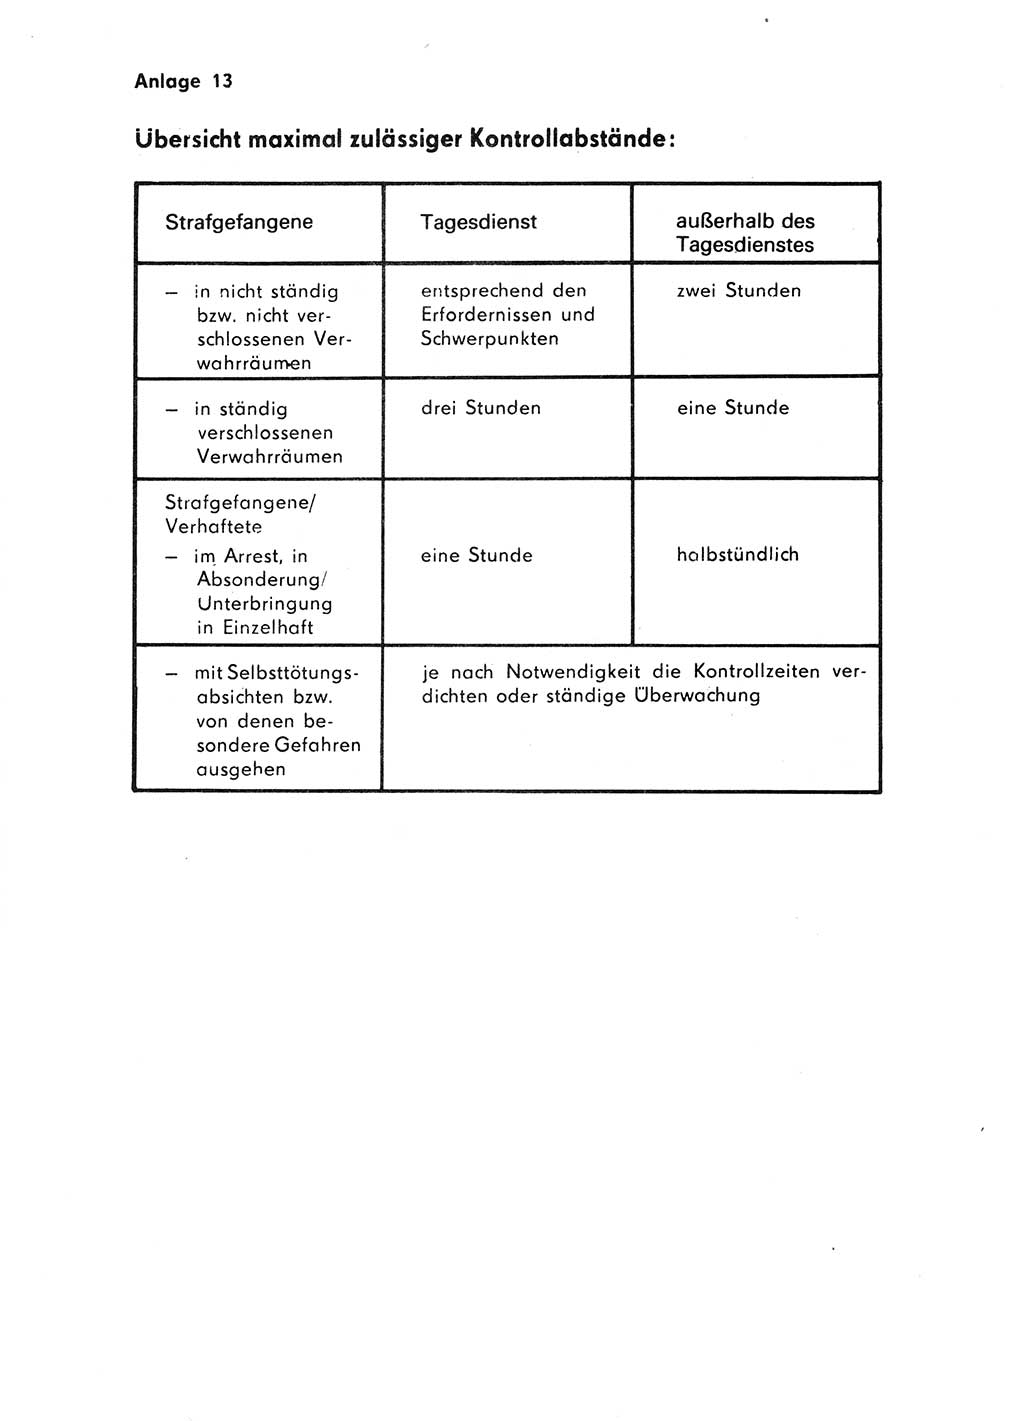 Handbuch für operative Dienste, Abteilung Strafvollzug (SV) [Ministerium des Innern (MdI) Deutsche Demokratische Republik (DDR)] 1981, Seite 168 (Hb. op. D. Abt. SV MdI DDR 1981, S. 168)